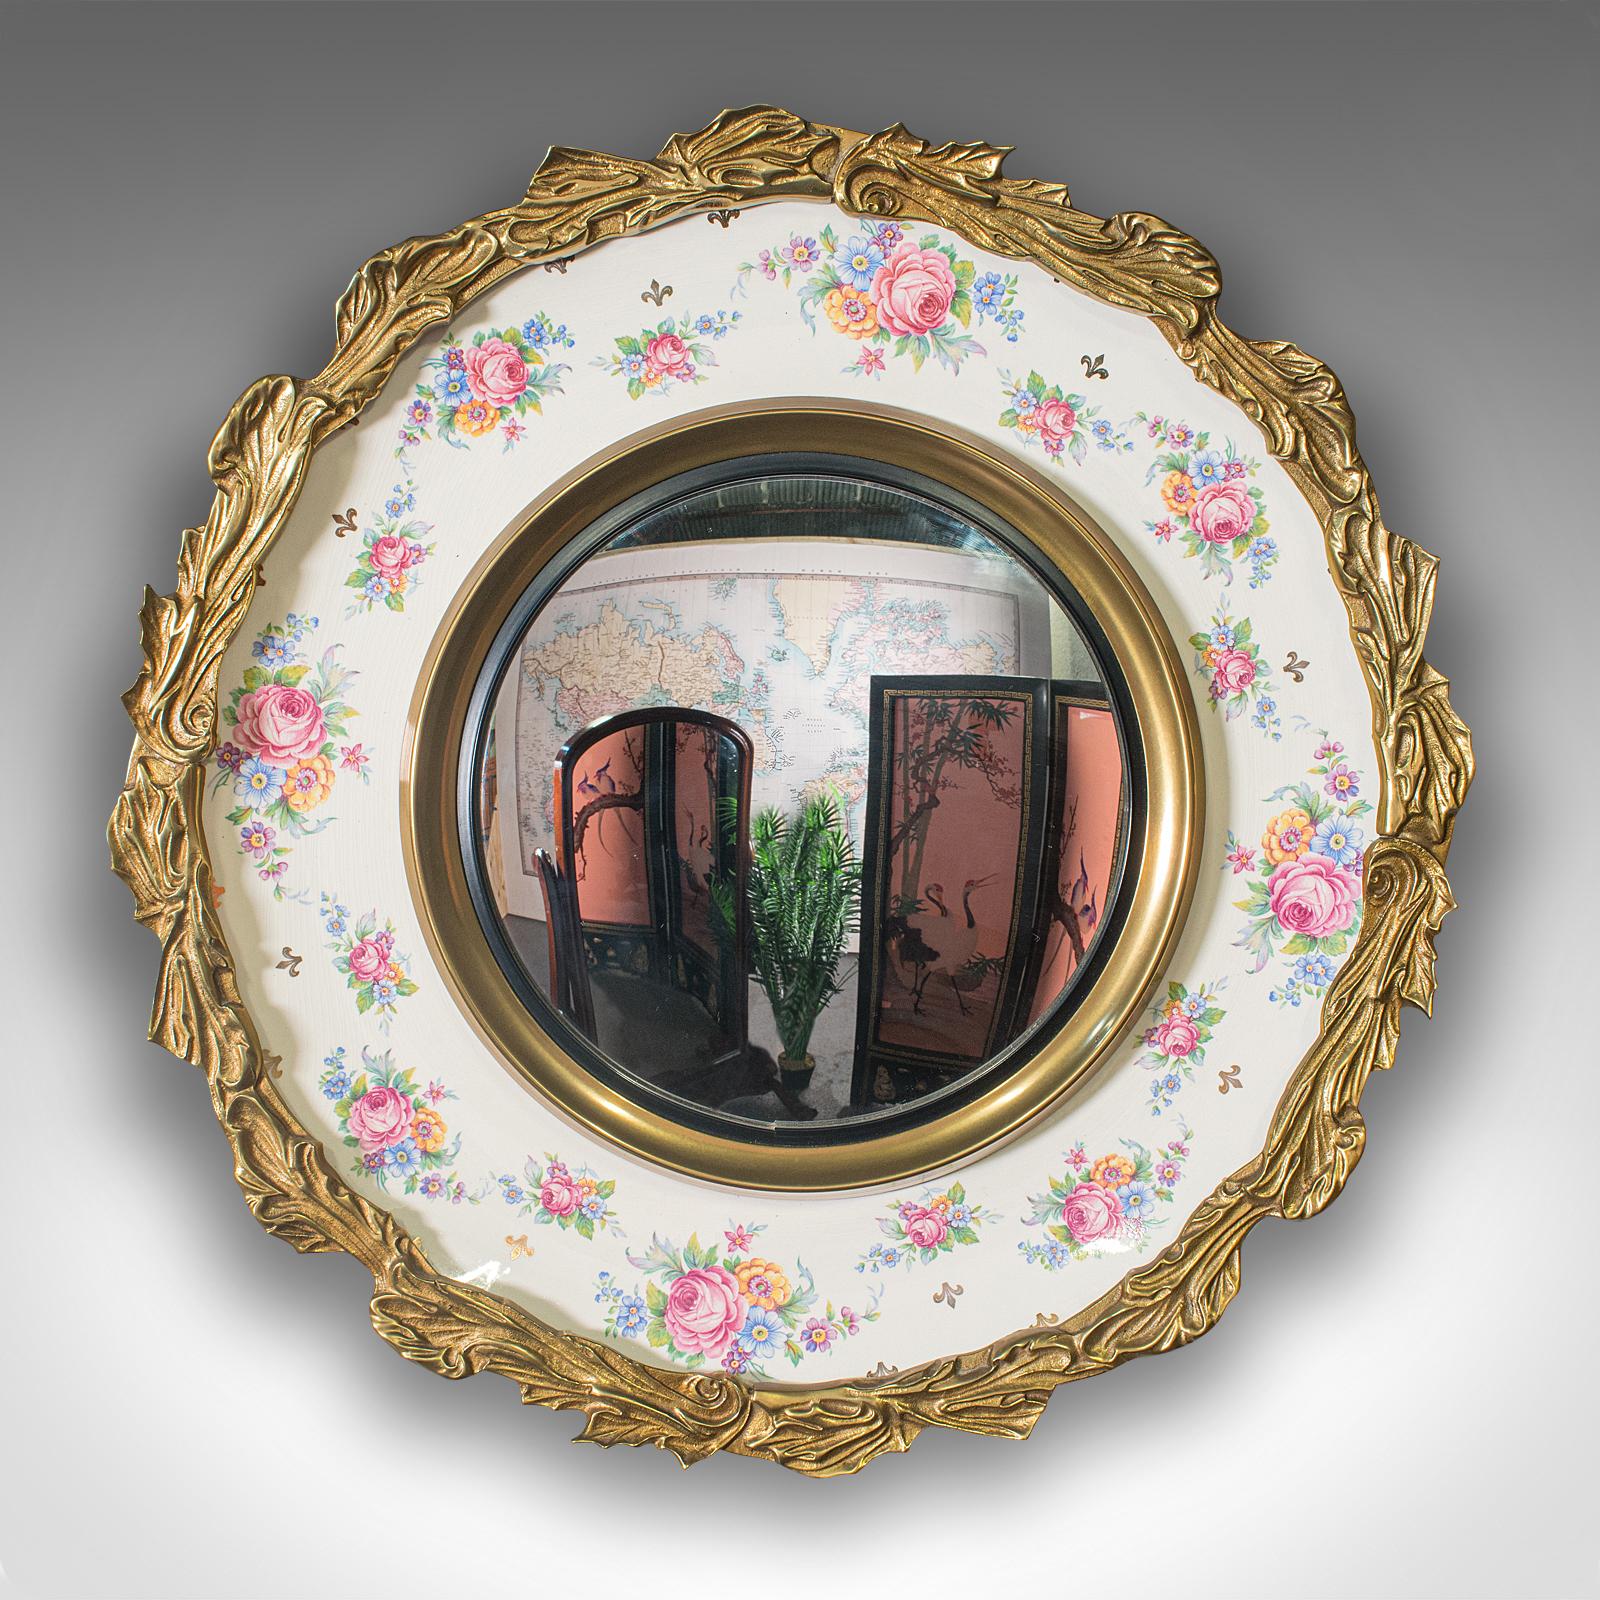 Dies ist ein konvexer Vintage-Spiegel. Ein englischer Wandspiegel aus Glas und Keramik mit italienischem Geschmack, aus dem frühen 20. Jahrhundert, um 1930.

Unverwechselbarer Spiegel mit charmantem Dekor und klassisch italienischer